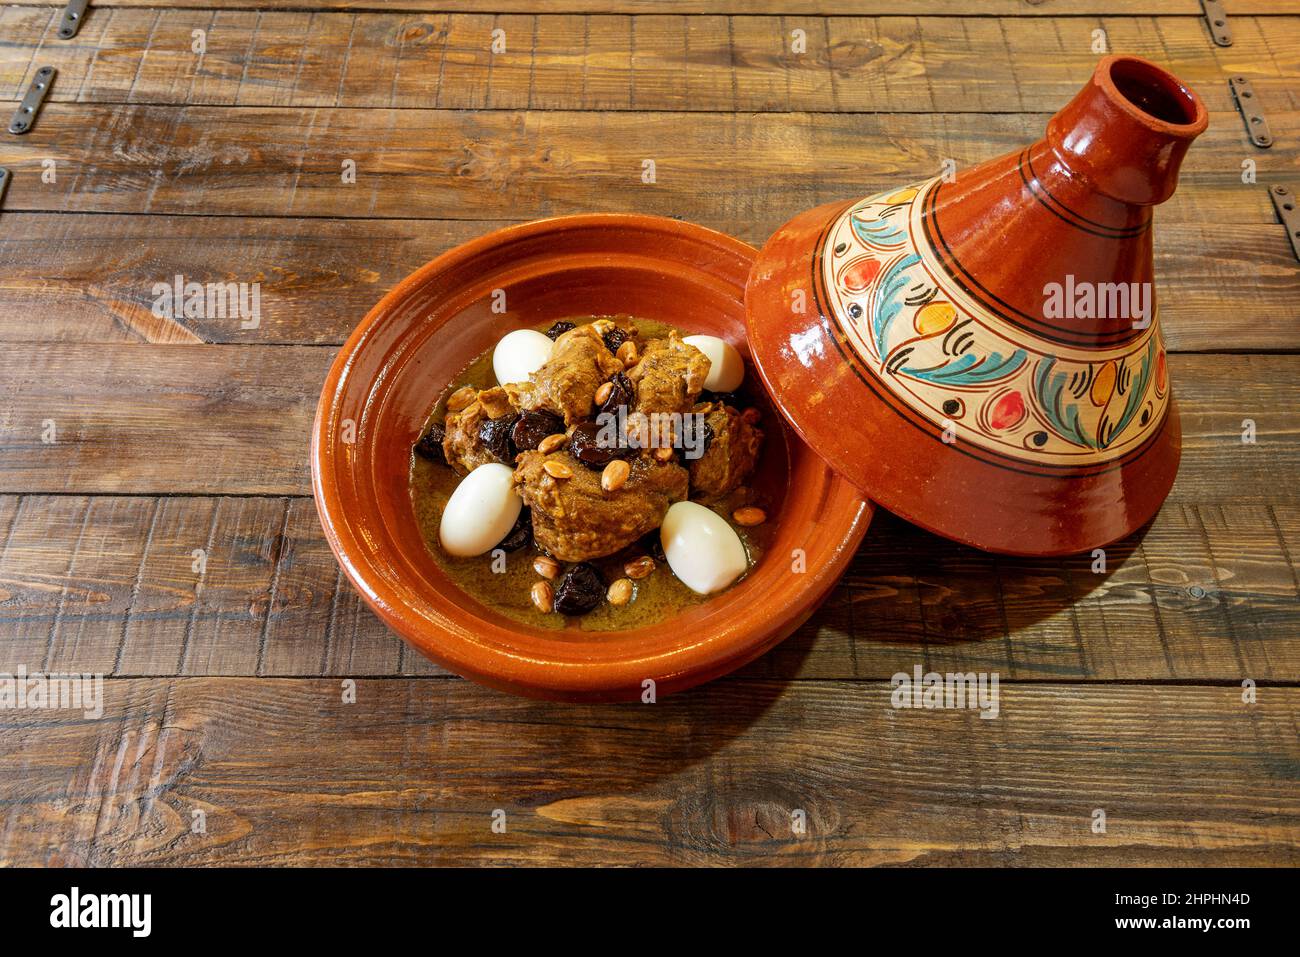 Le tagine, en raison de sa prononciation, est un plat traditionnel de la cuisine arabo-berbère d'origine berbère qui porte le nom du pot d'argile dans lequel il est Banque D'Images